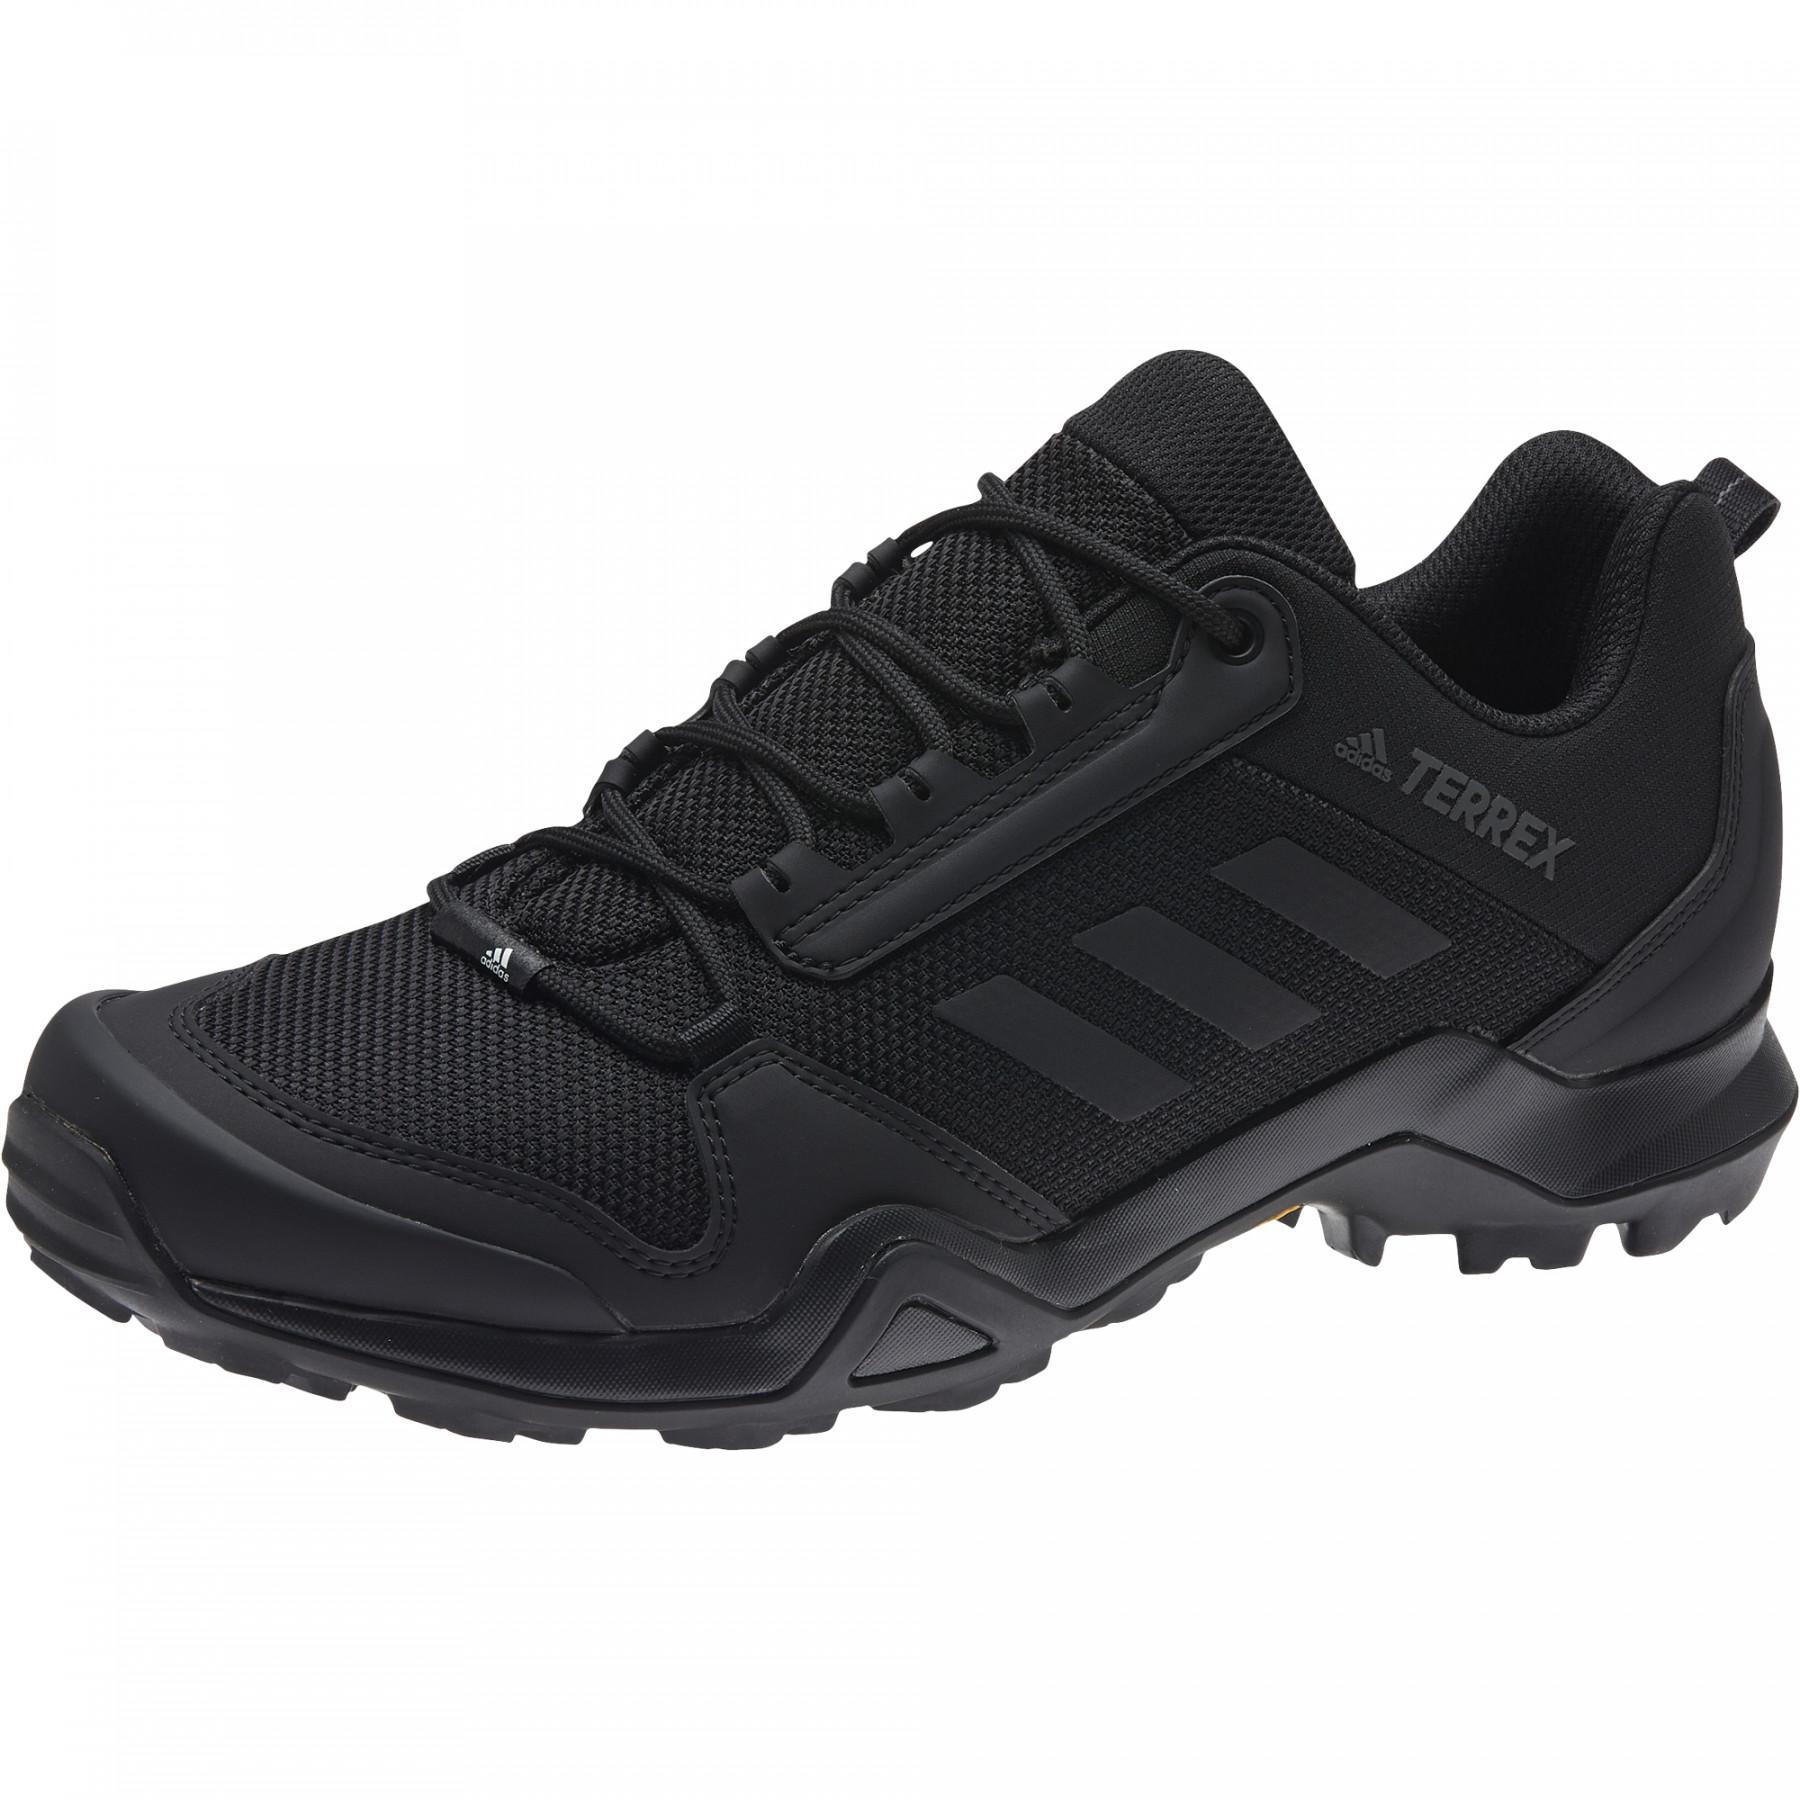 Trail shoes adidas Terrex AX3